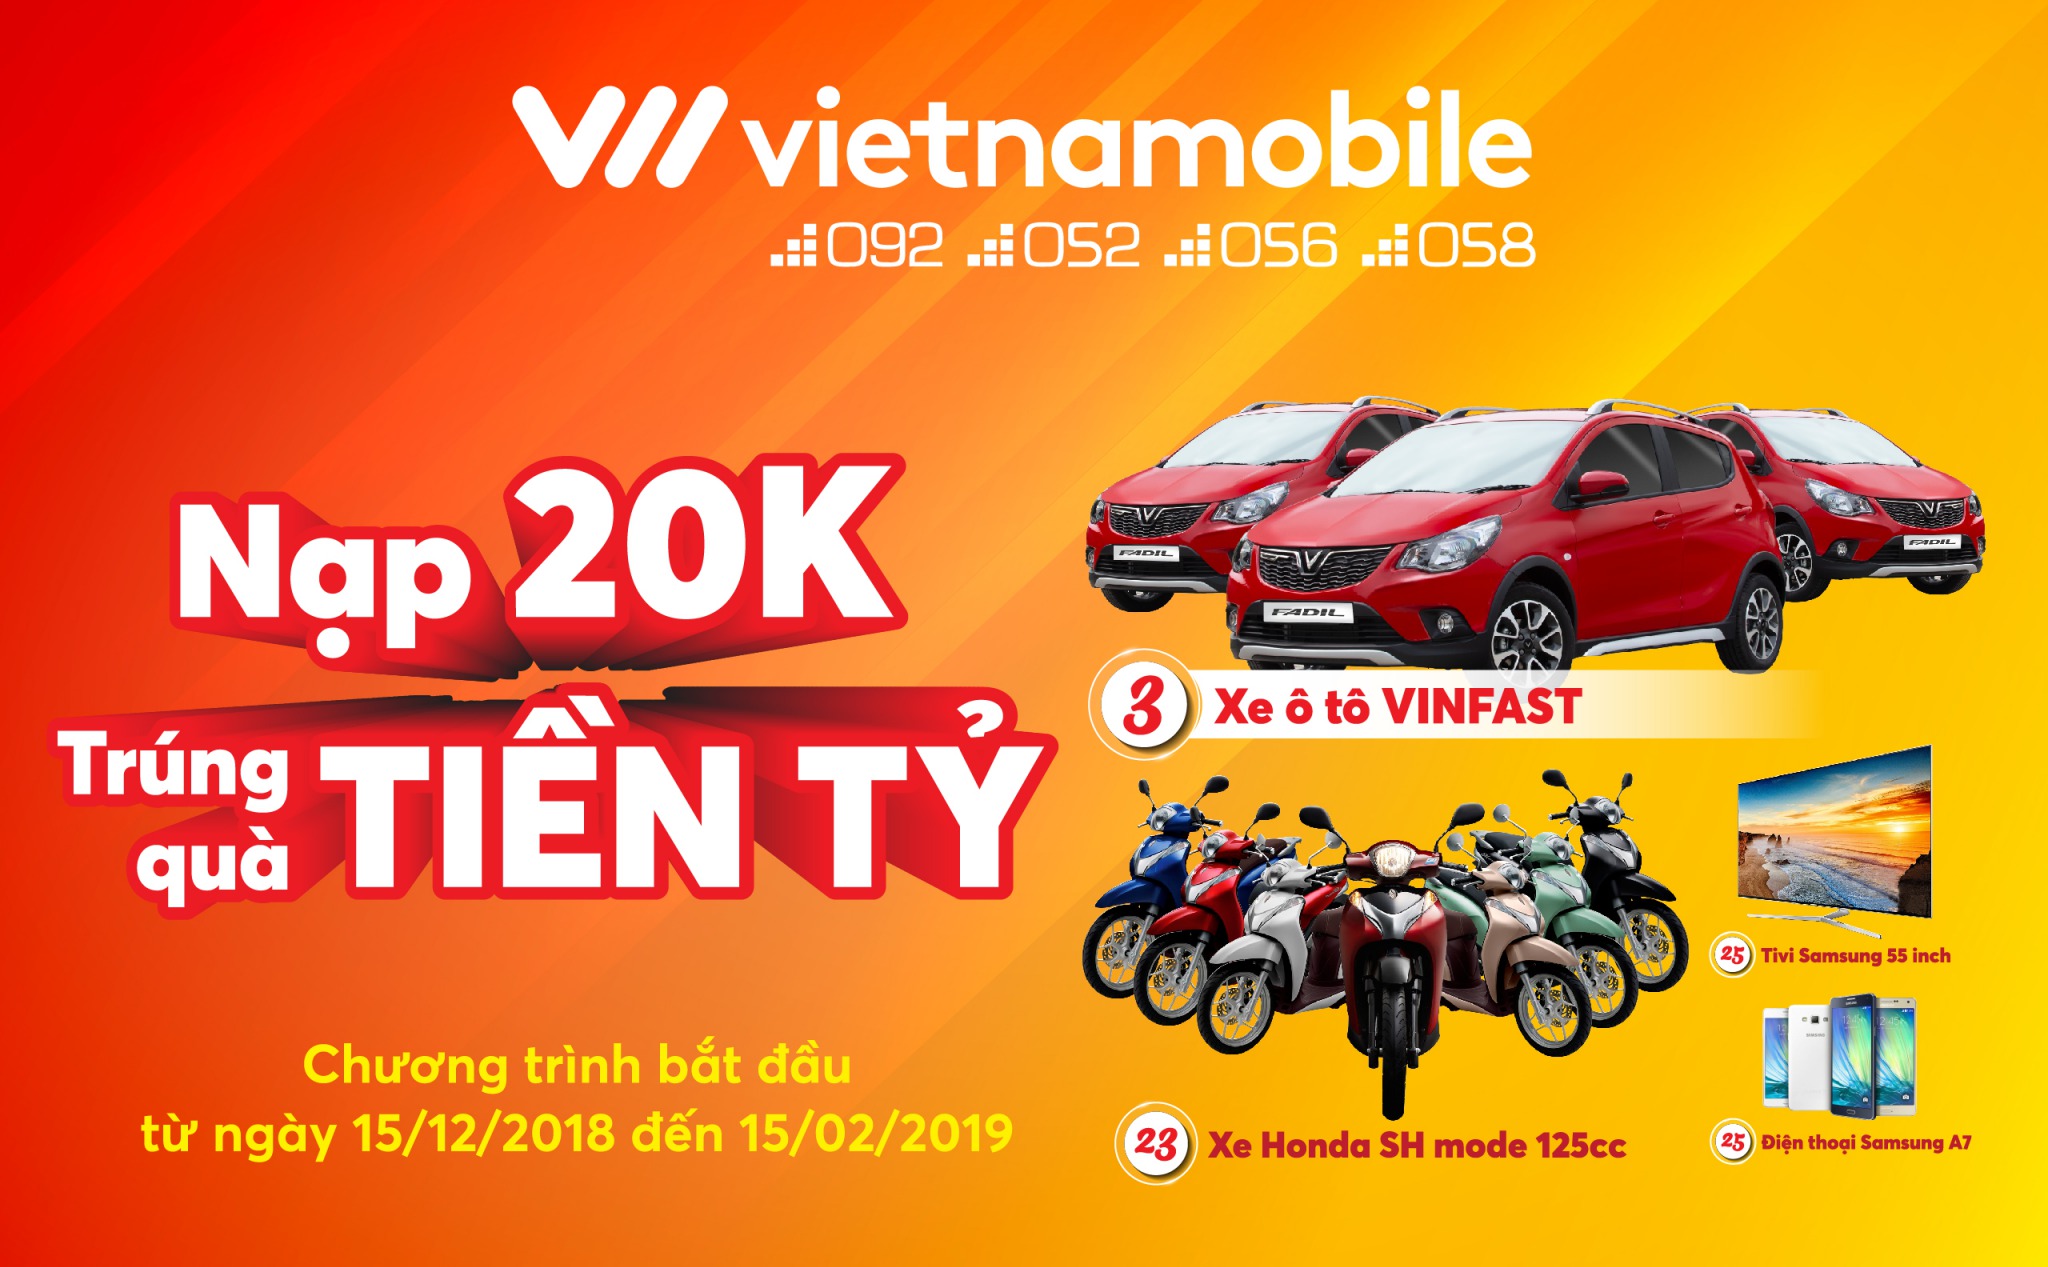 [QC] Khuyến mãi Tết 2019 của các nhà mạng: Vietnamobile khởi xướng với giải thưởng ôtô Vinfast khủng